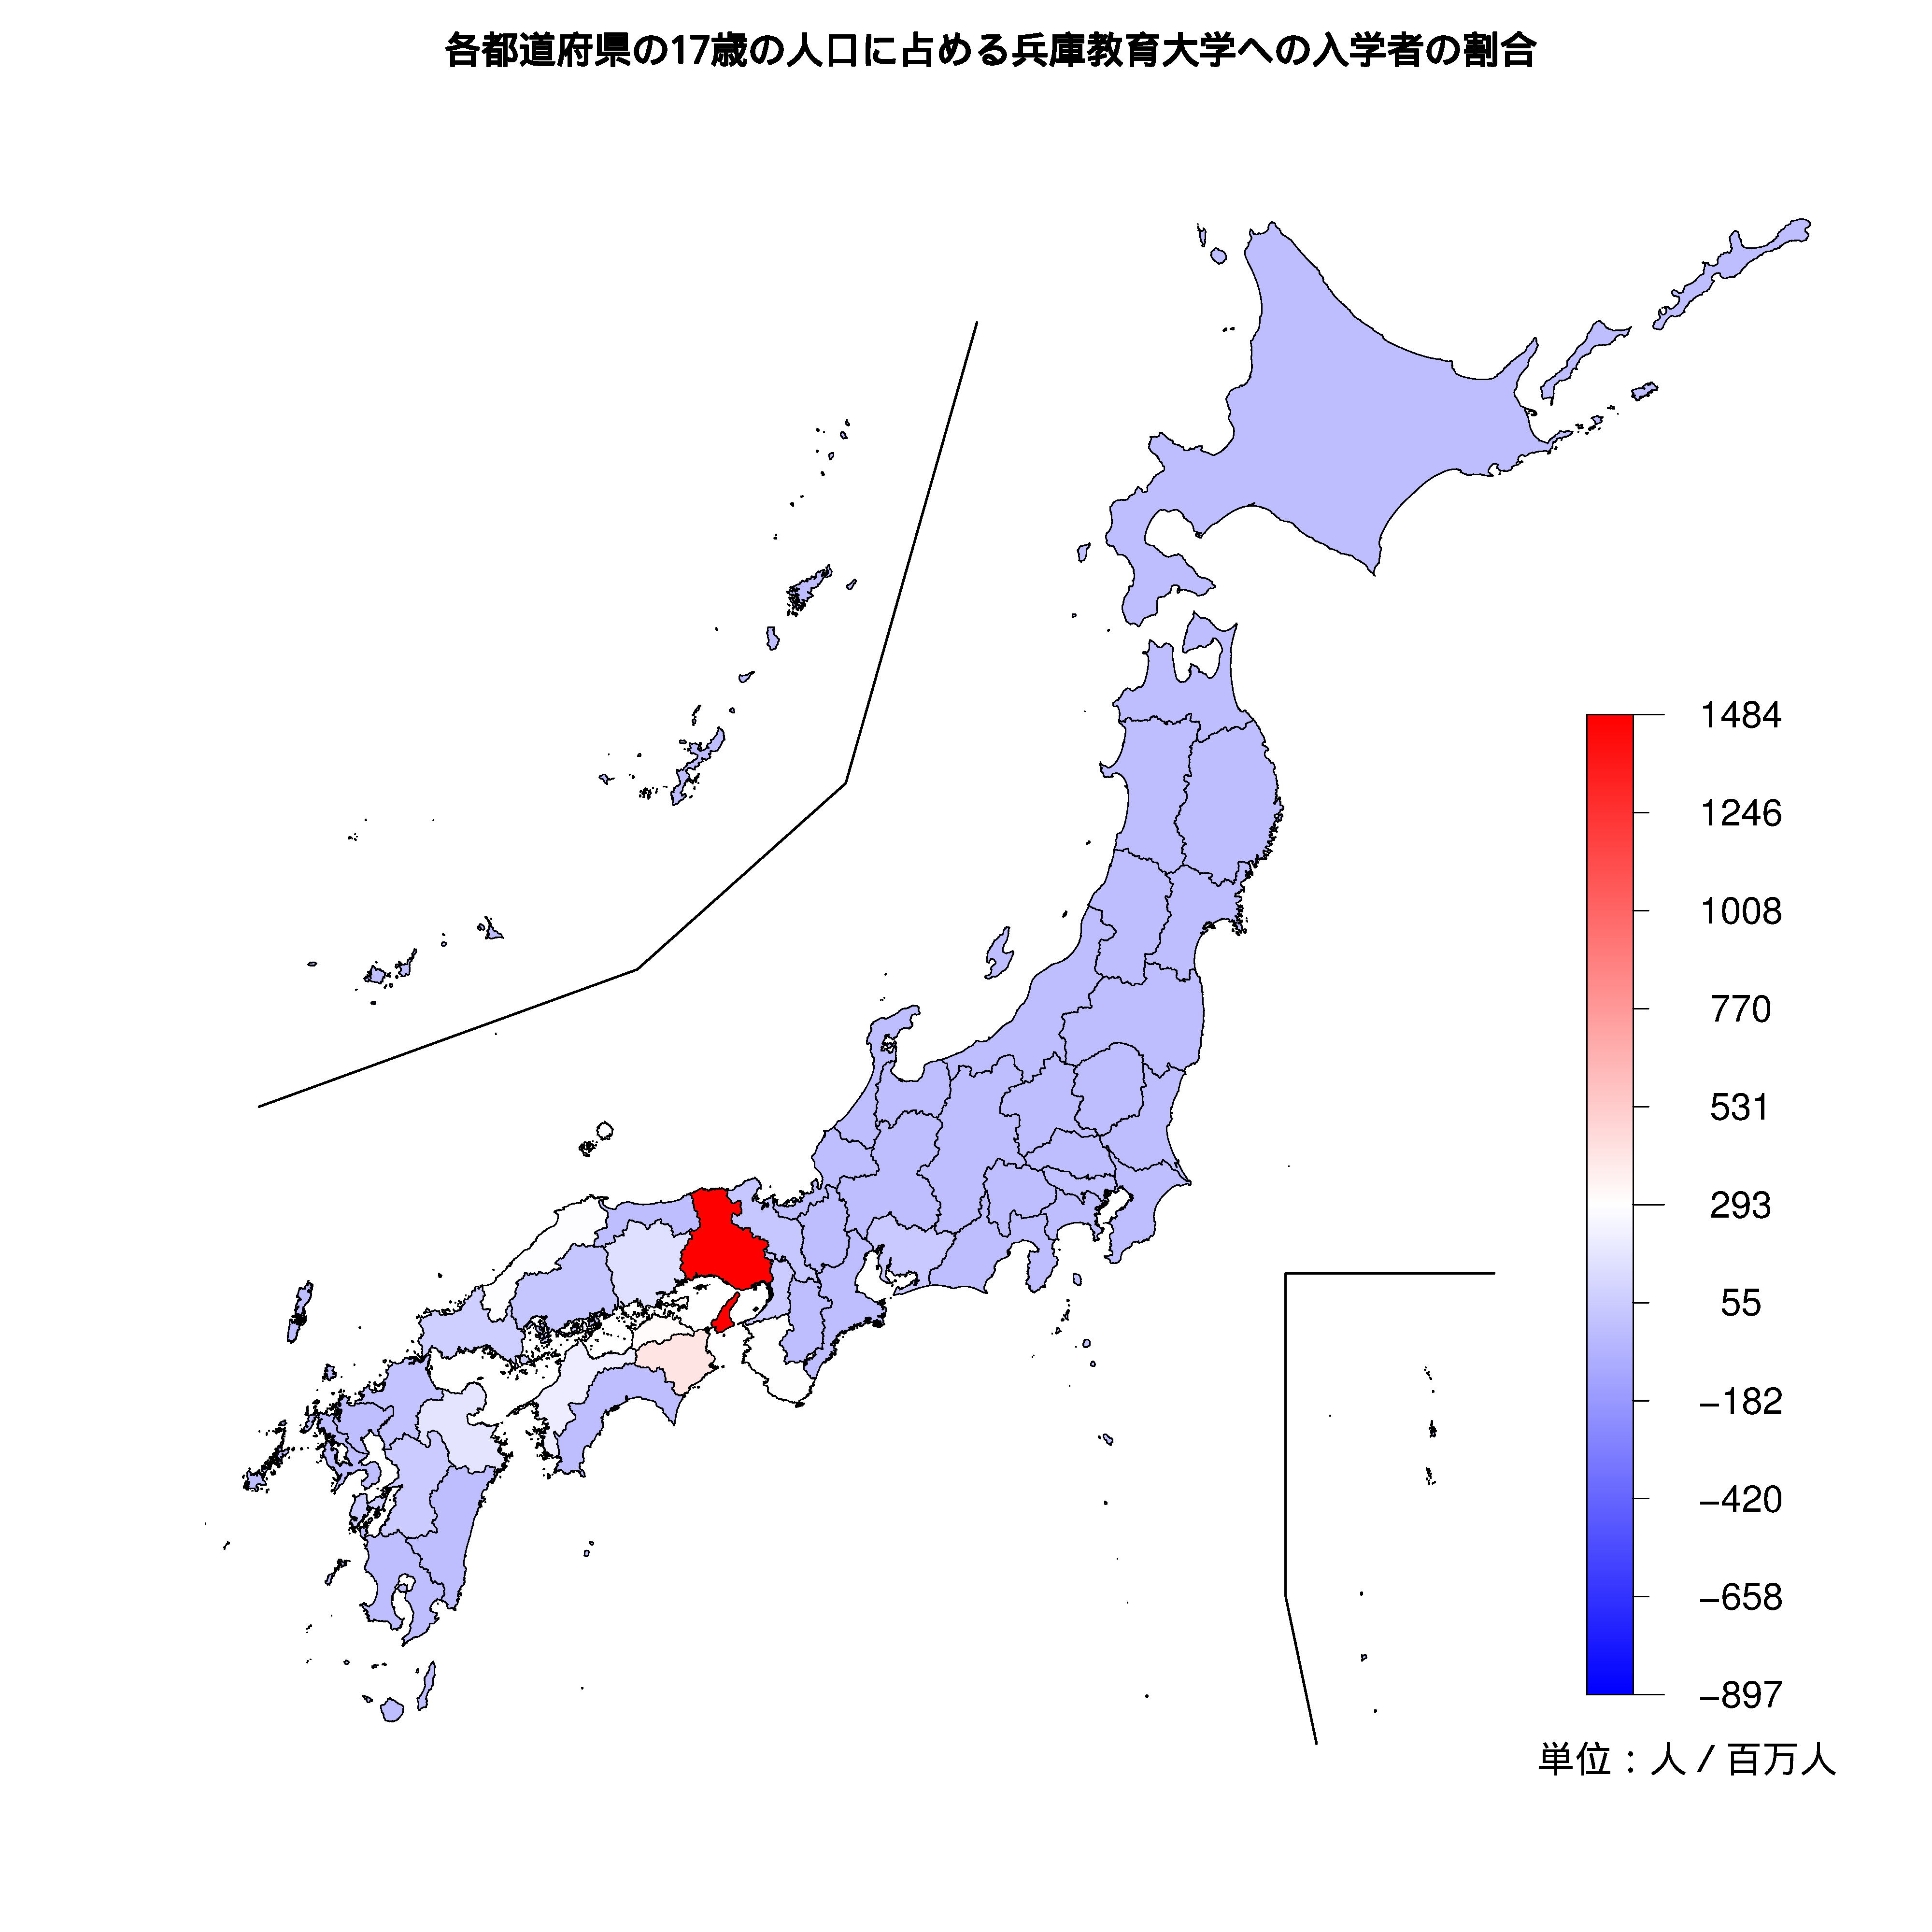 兵庫教育大学への入学者が多い都道府県の色分け地図